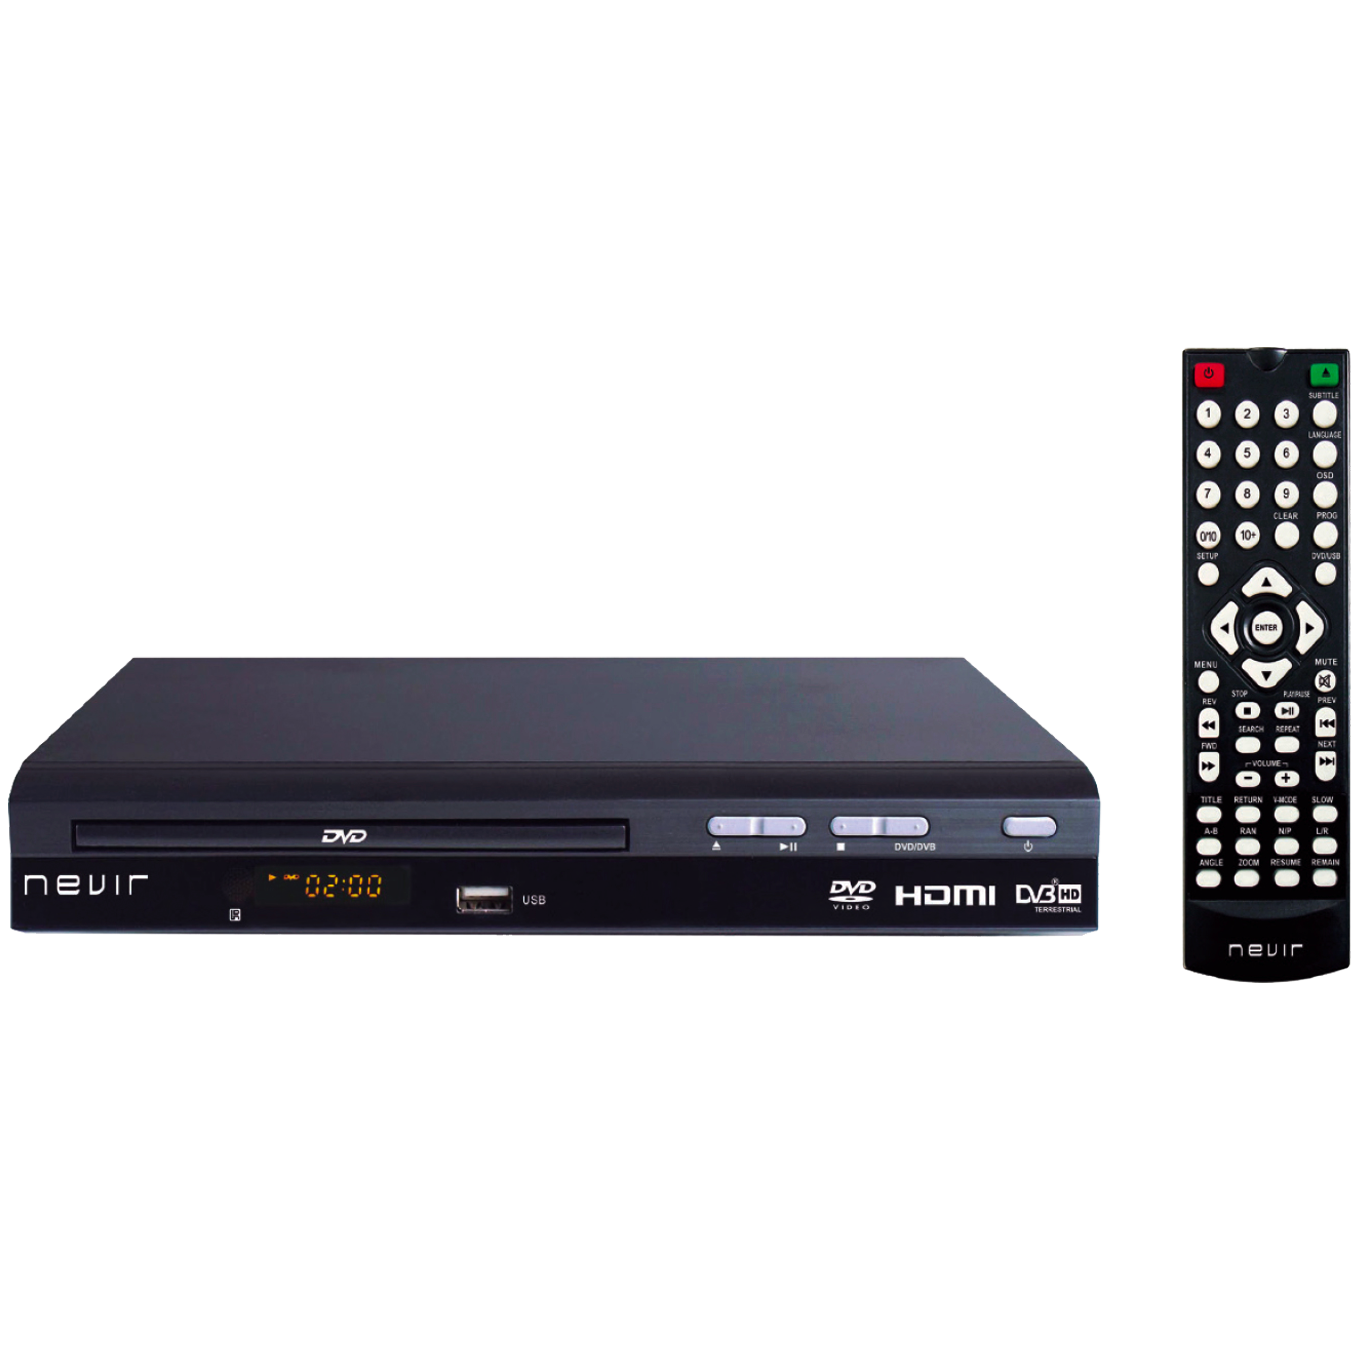 TV LCD con TDT DVD y USB grabador - Nevir